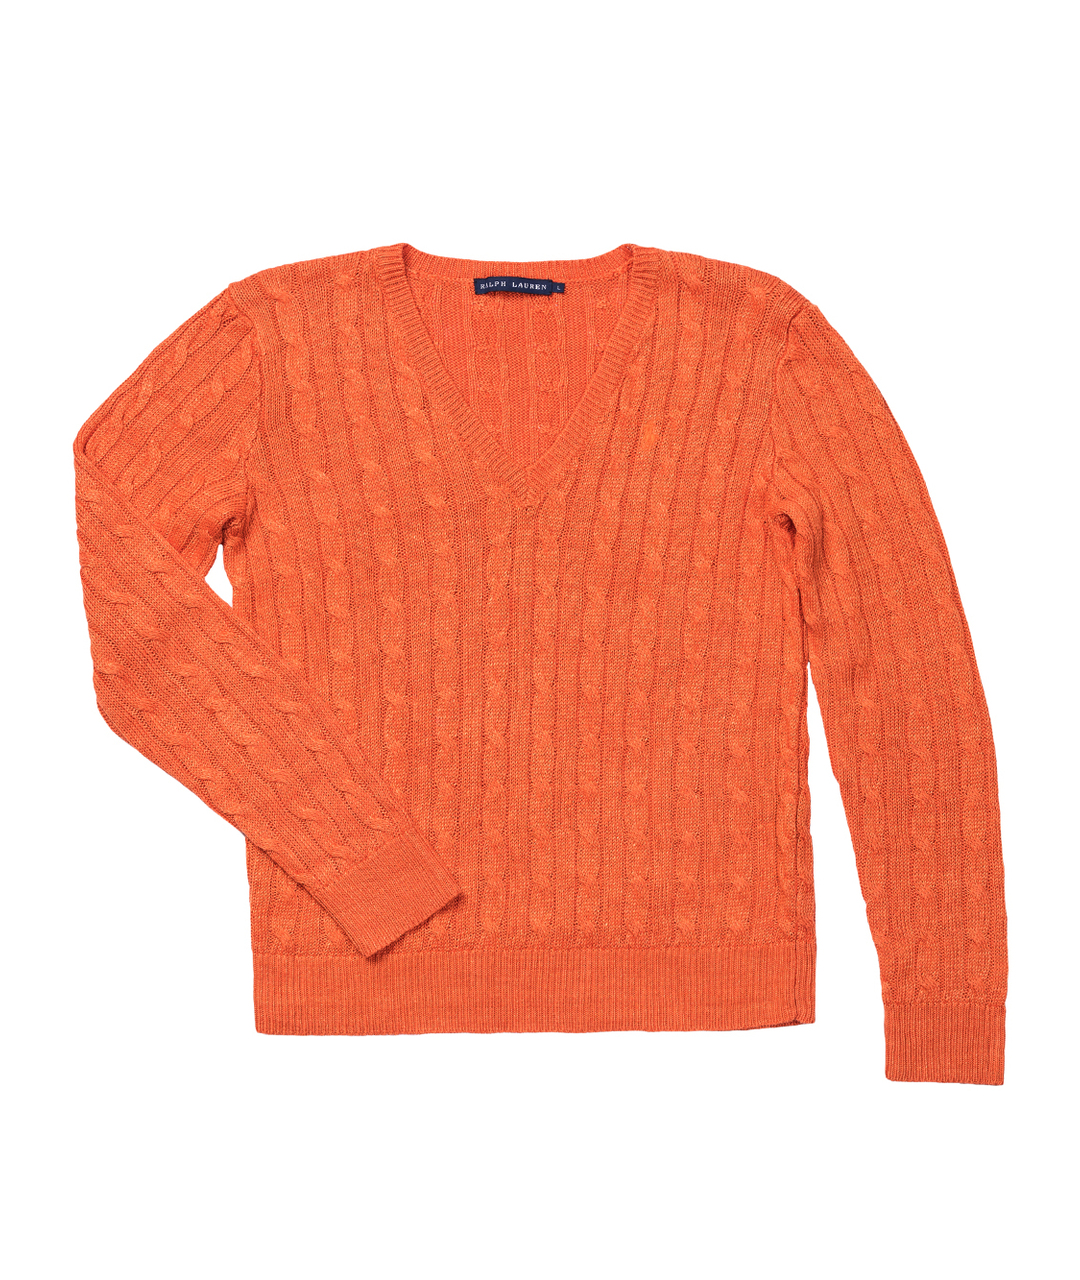 RALPH LAUREN Оранжевый хлопковый джемпер / свитер, фото 1